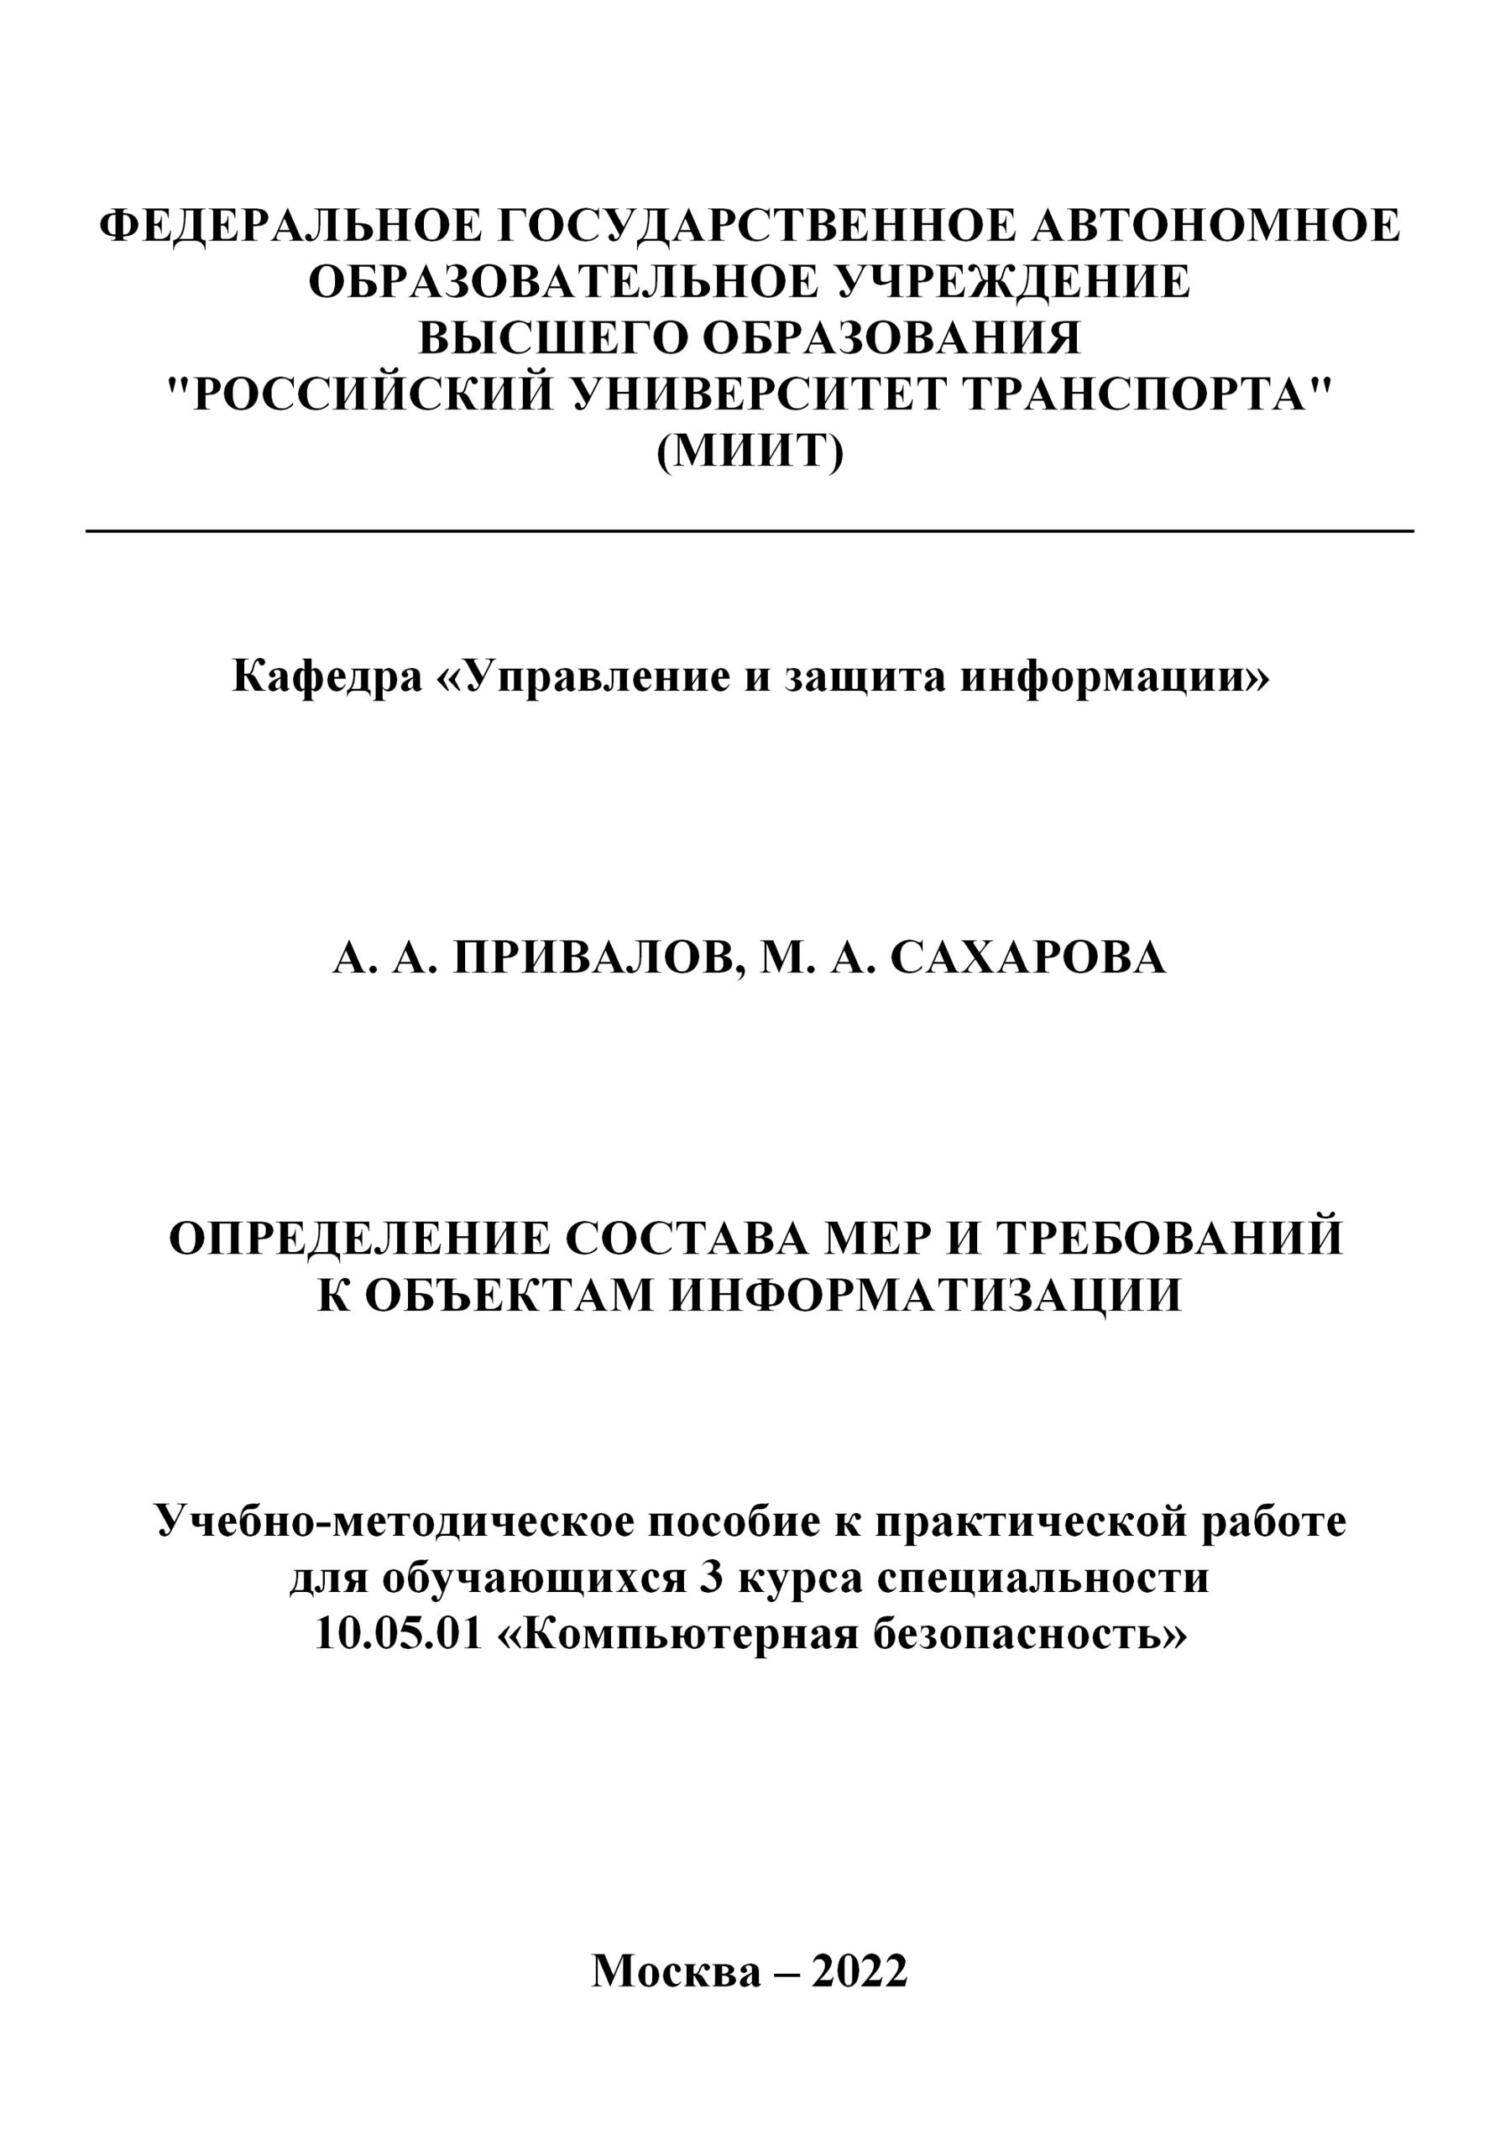 Определение состава мер и требований к объектам информатизации - Александр Андреевич Привалов